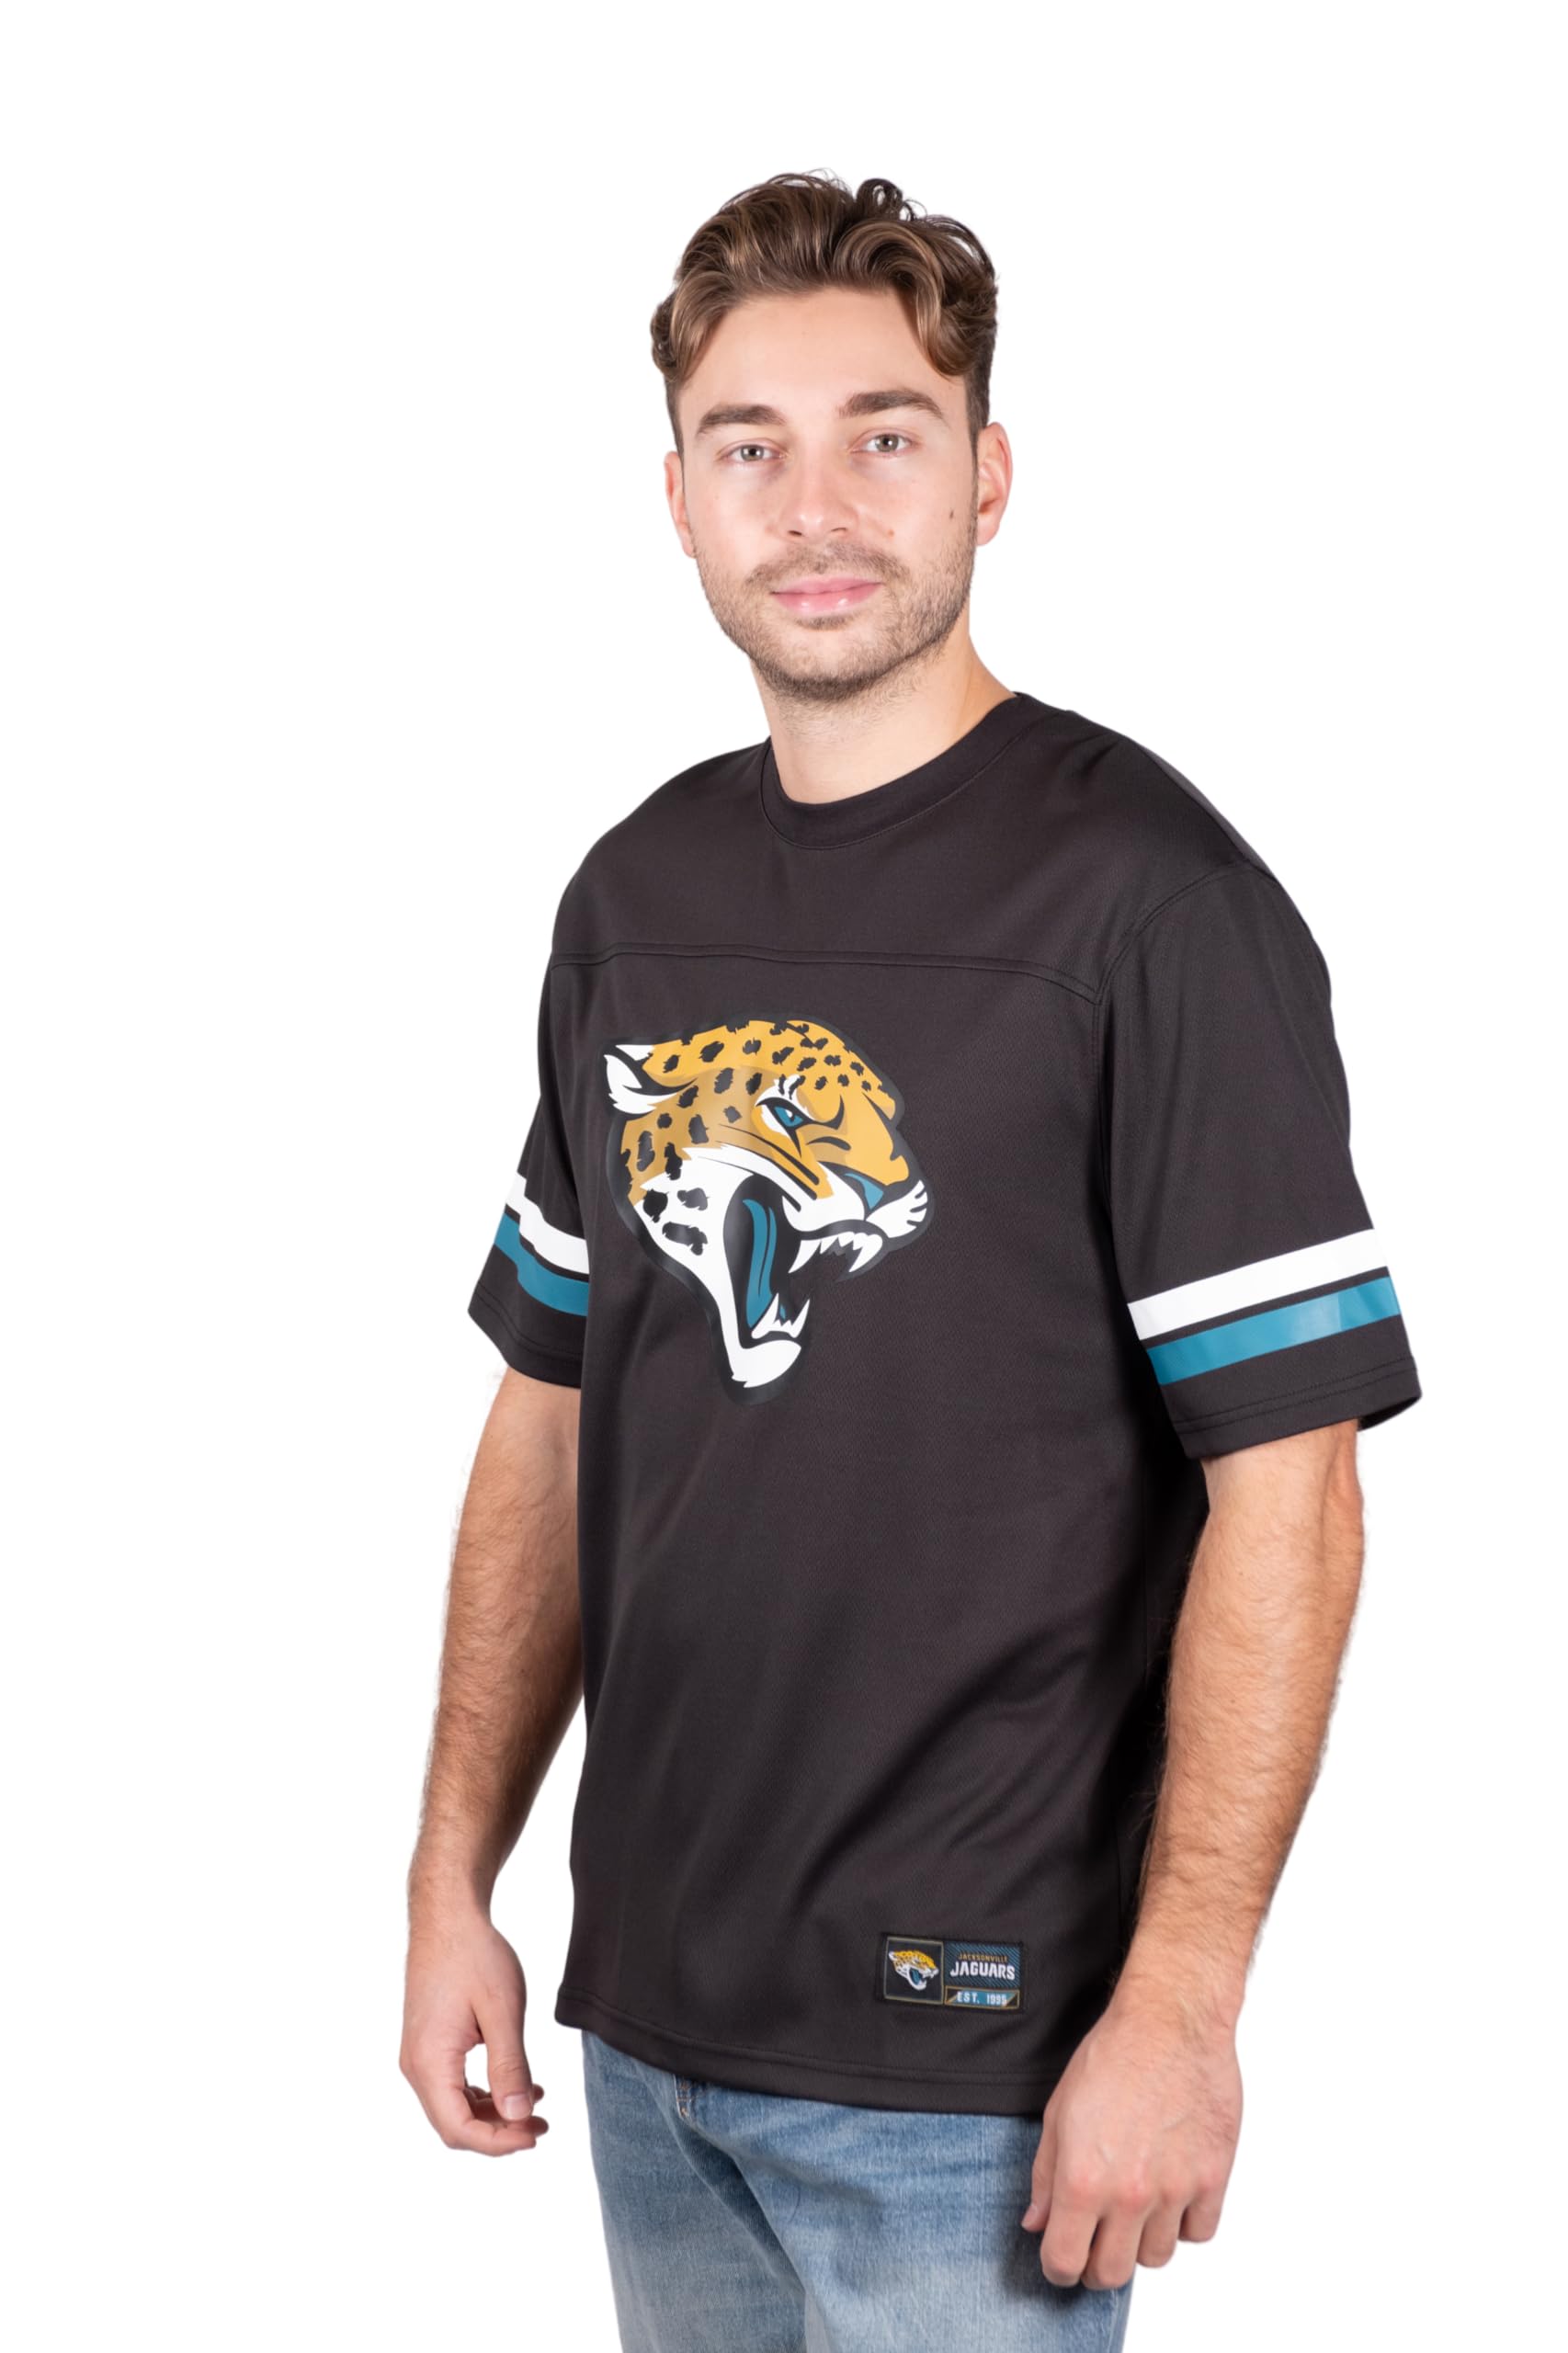 Ultra Game NFL Jacksonville Jaguars Mens Standard Jersey Crew Neck Mesh Stripe T-Shirt|Jacksonville Jaguars